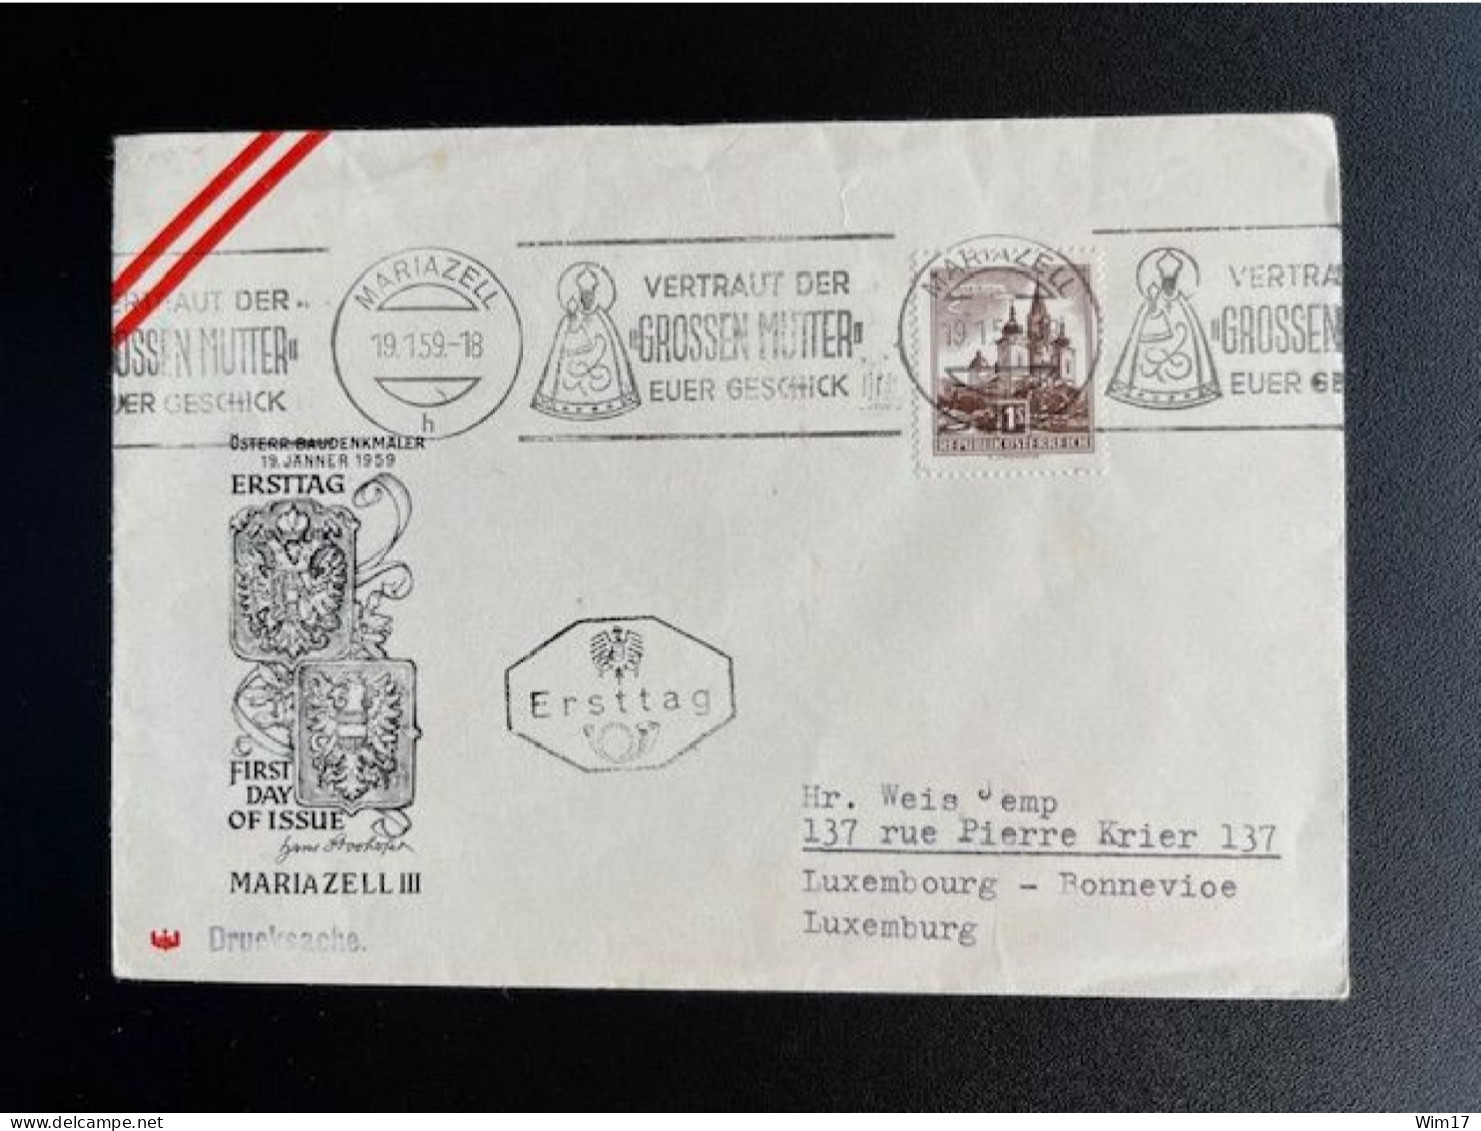 AUSTRIA 1959 LETTER MARIAZELL TO LUXEMBOURG 19-01-1959 OOSTENRIJK OSTERREICH FDC - Cartas & Documentos